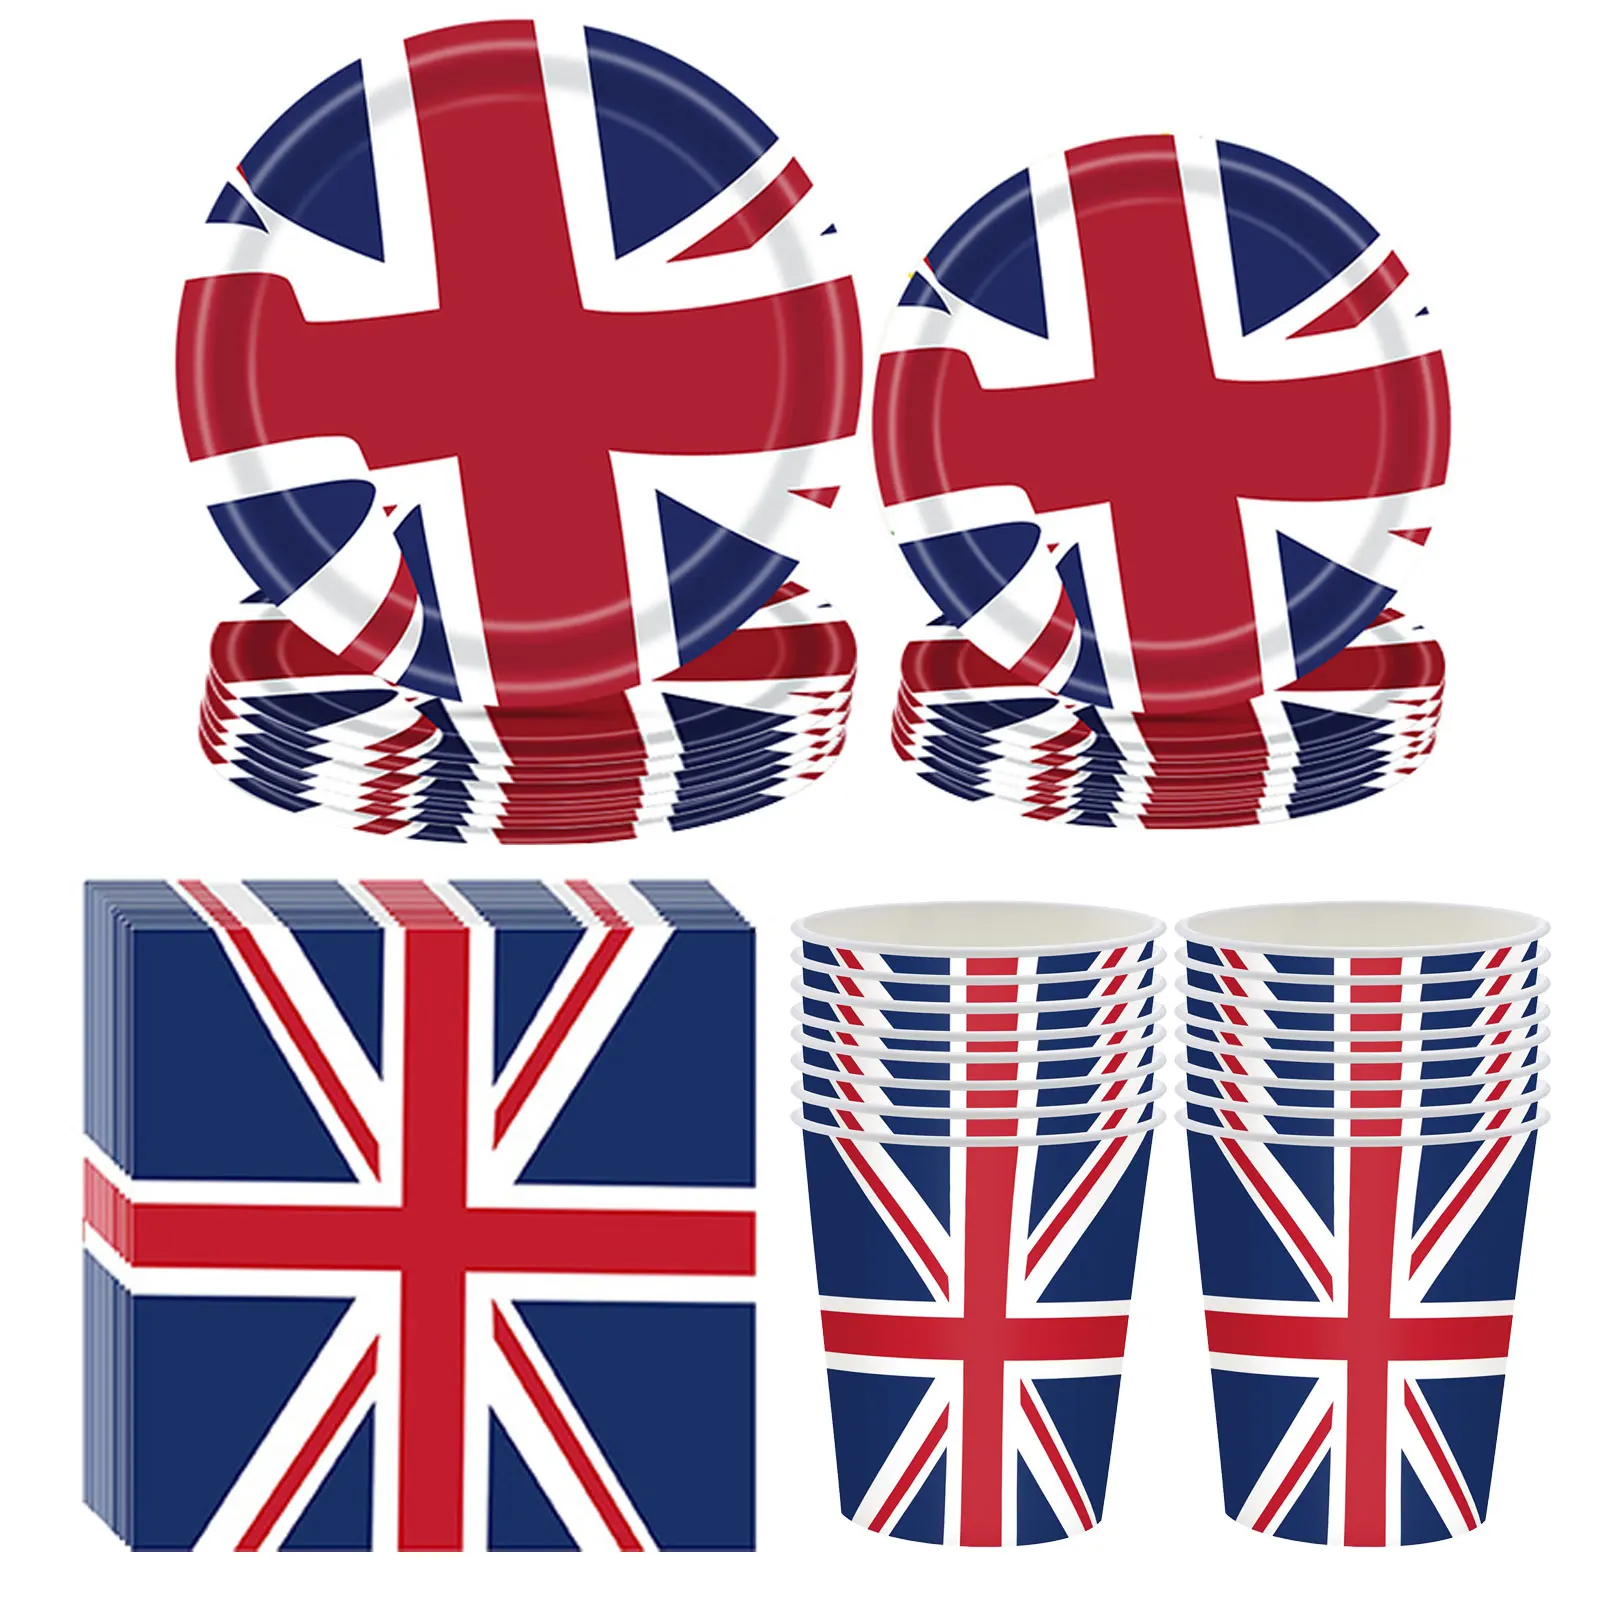 

68 штук столовая посуда с британским флагом прочные тарелки салфетки чашки флаг Джек набор вечерние чных принадлежностей королевы юбилей 2022...